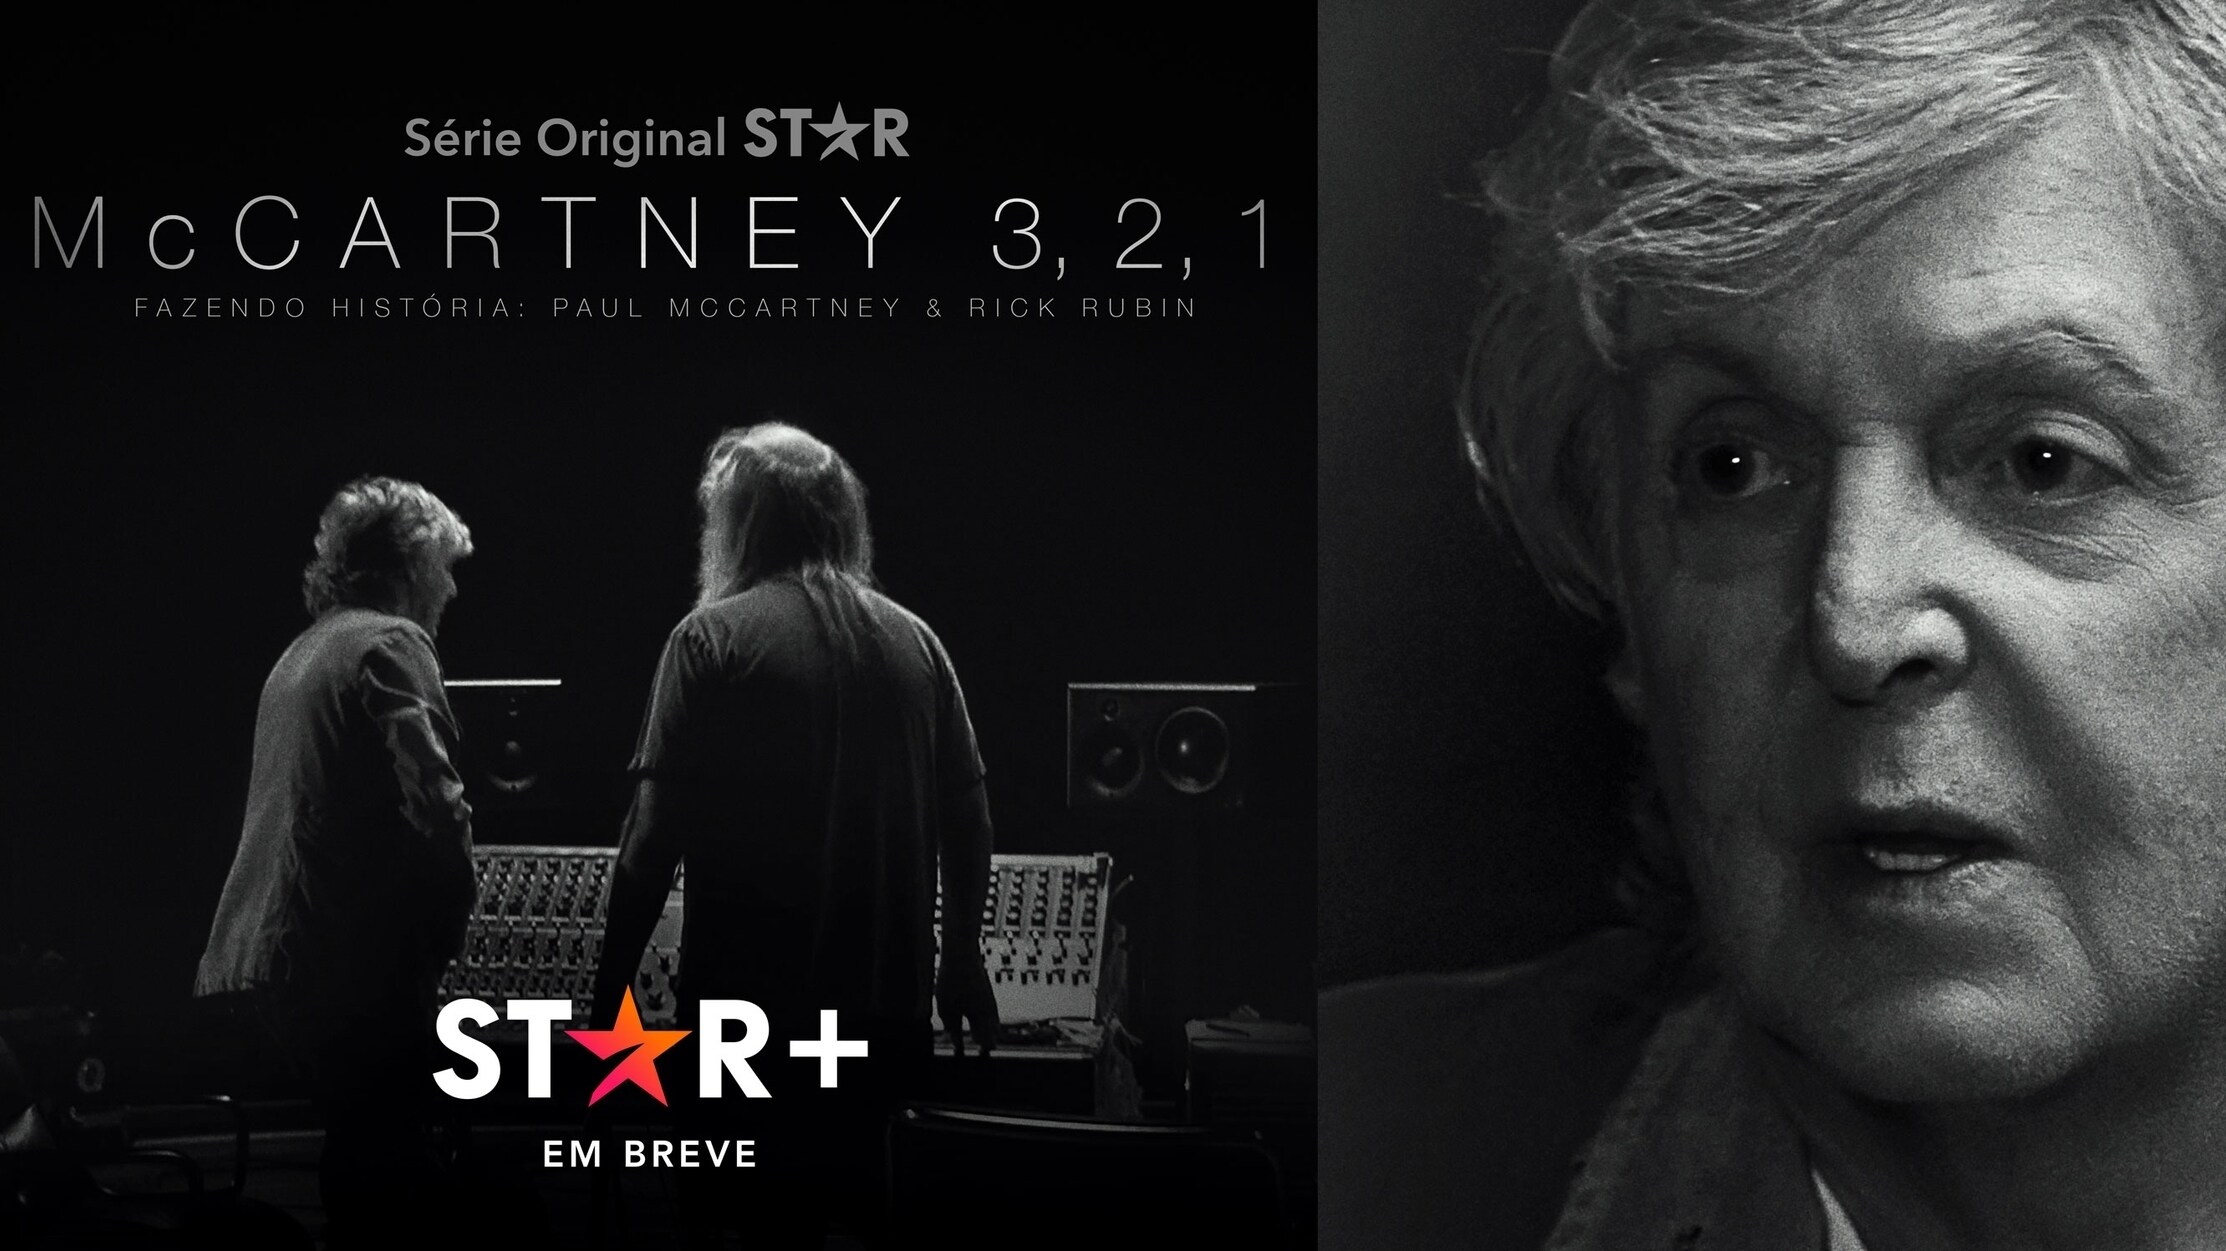 Star+ apresenta com exclusividade Mccartney 3, 2, 1